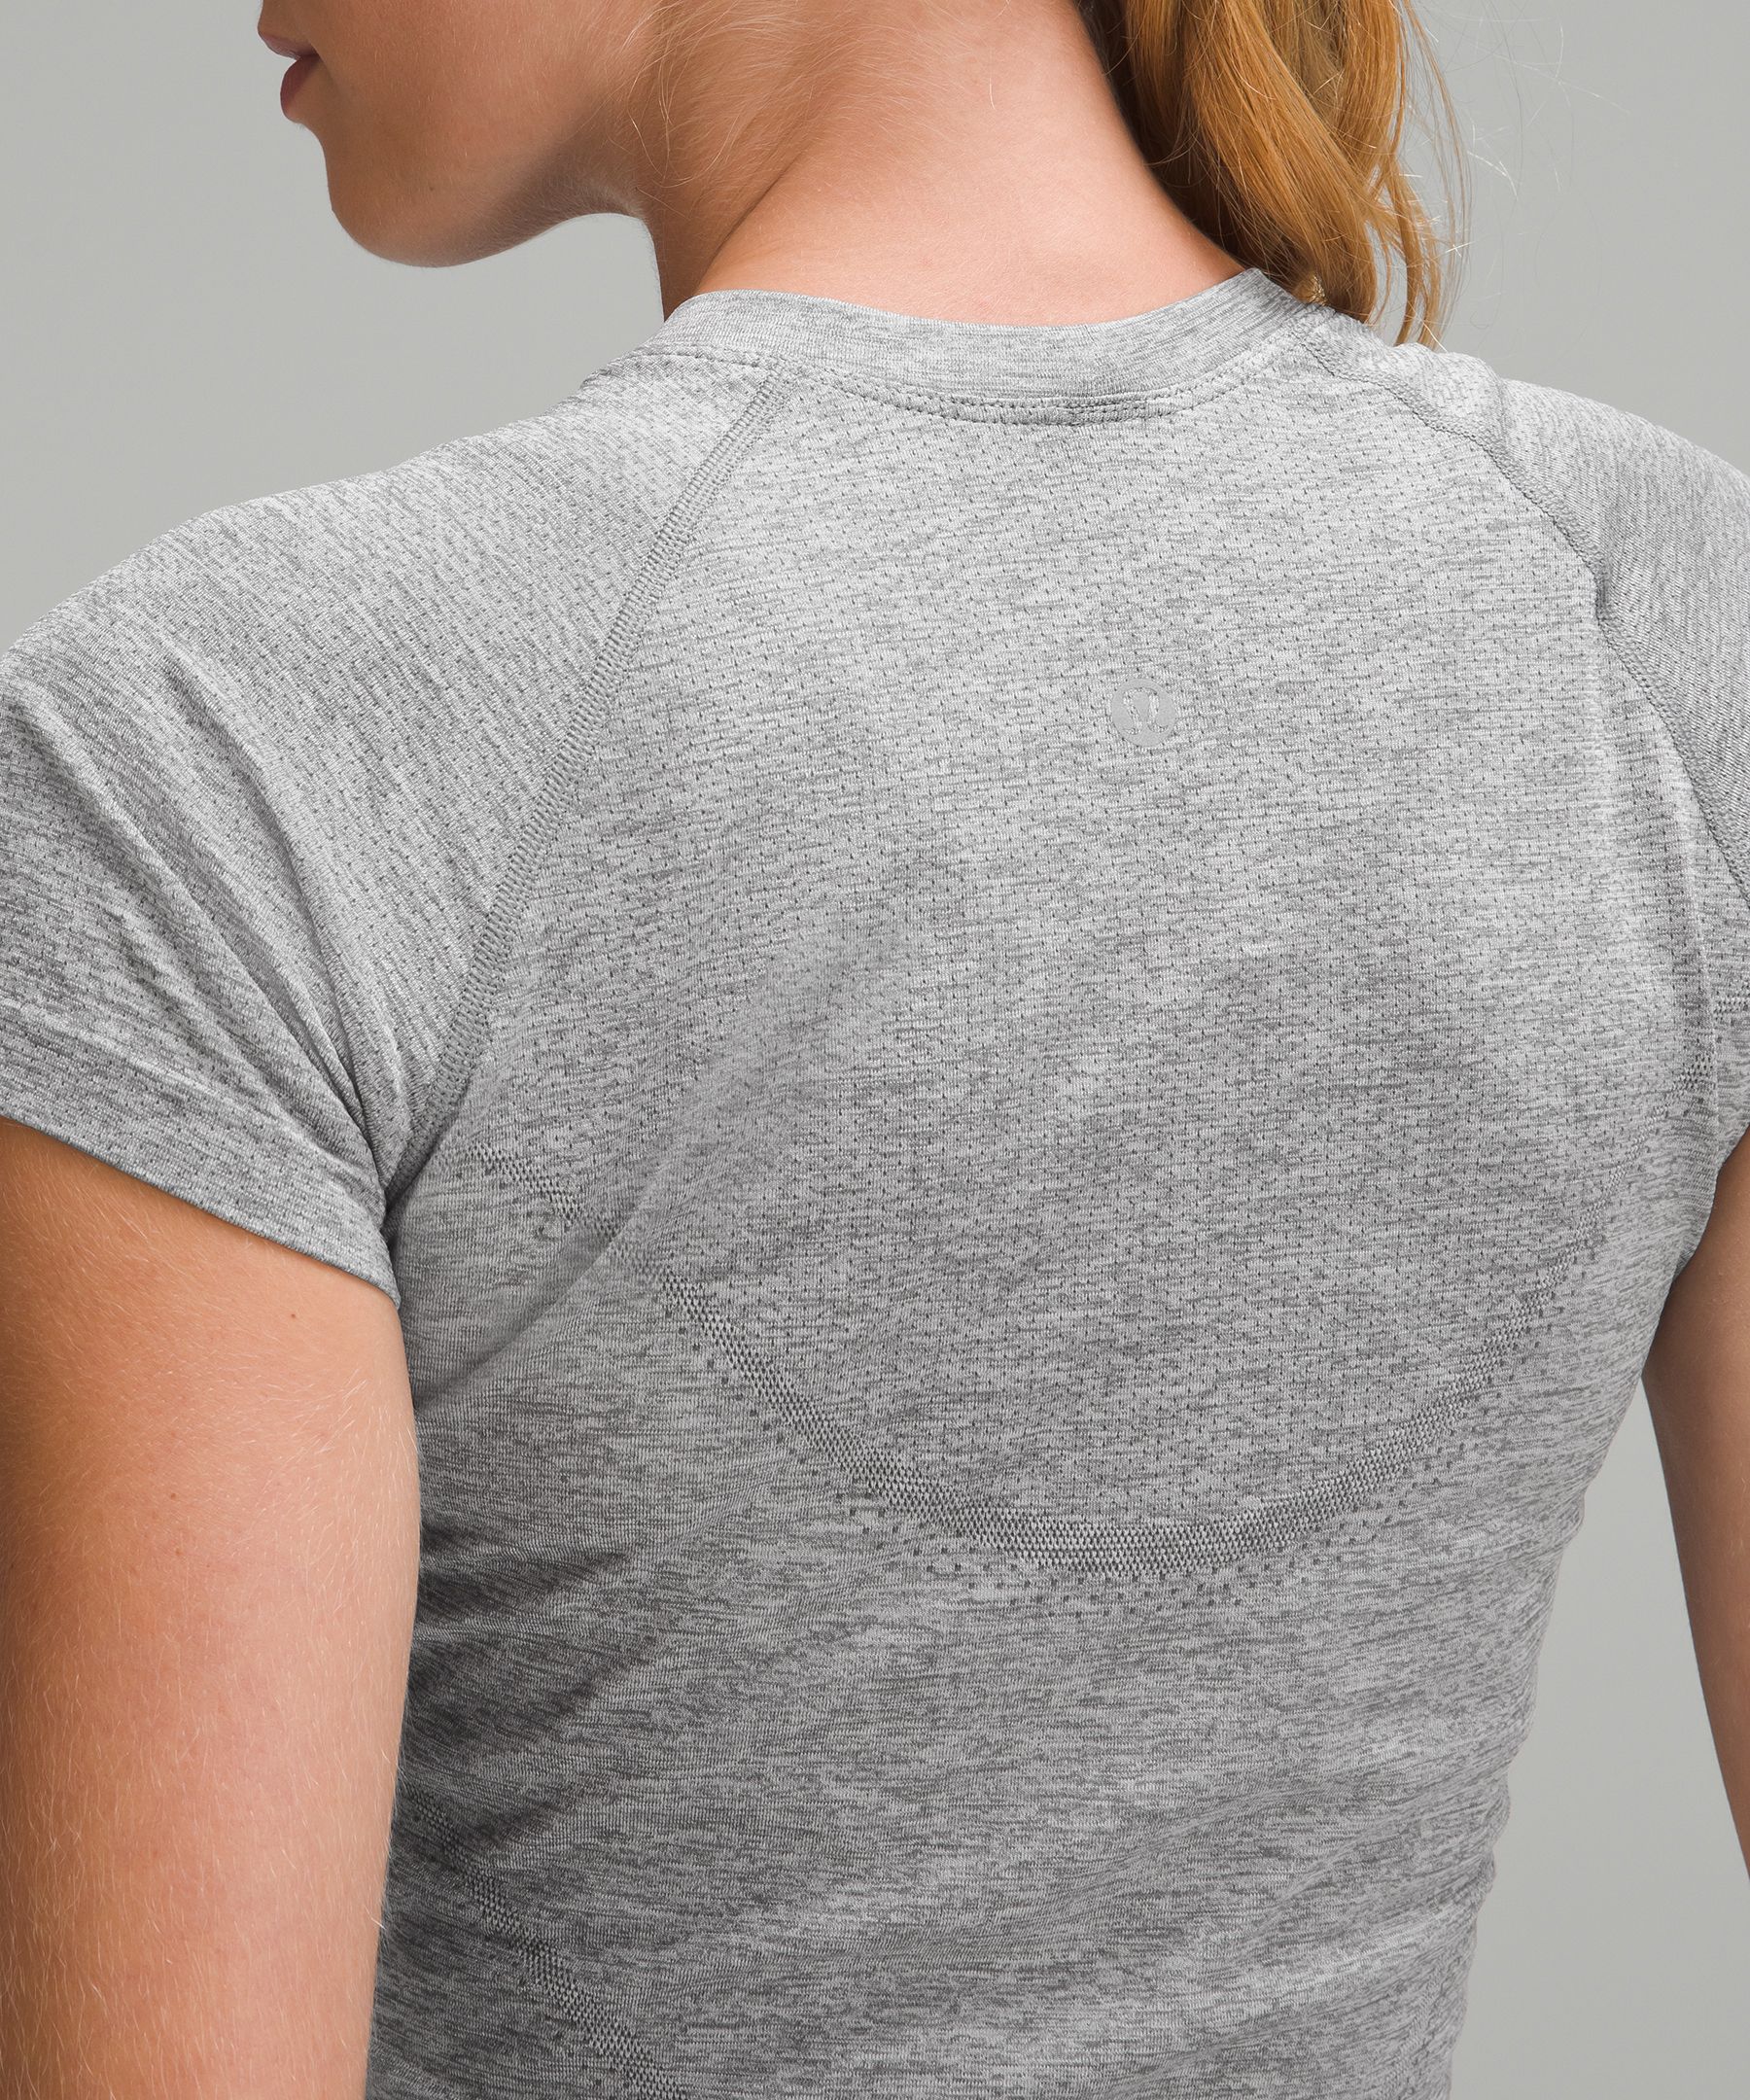 Lululemon Swiftly Tech Cropped Short-Sleeve Shirt 2.0. 5